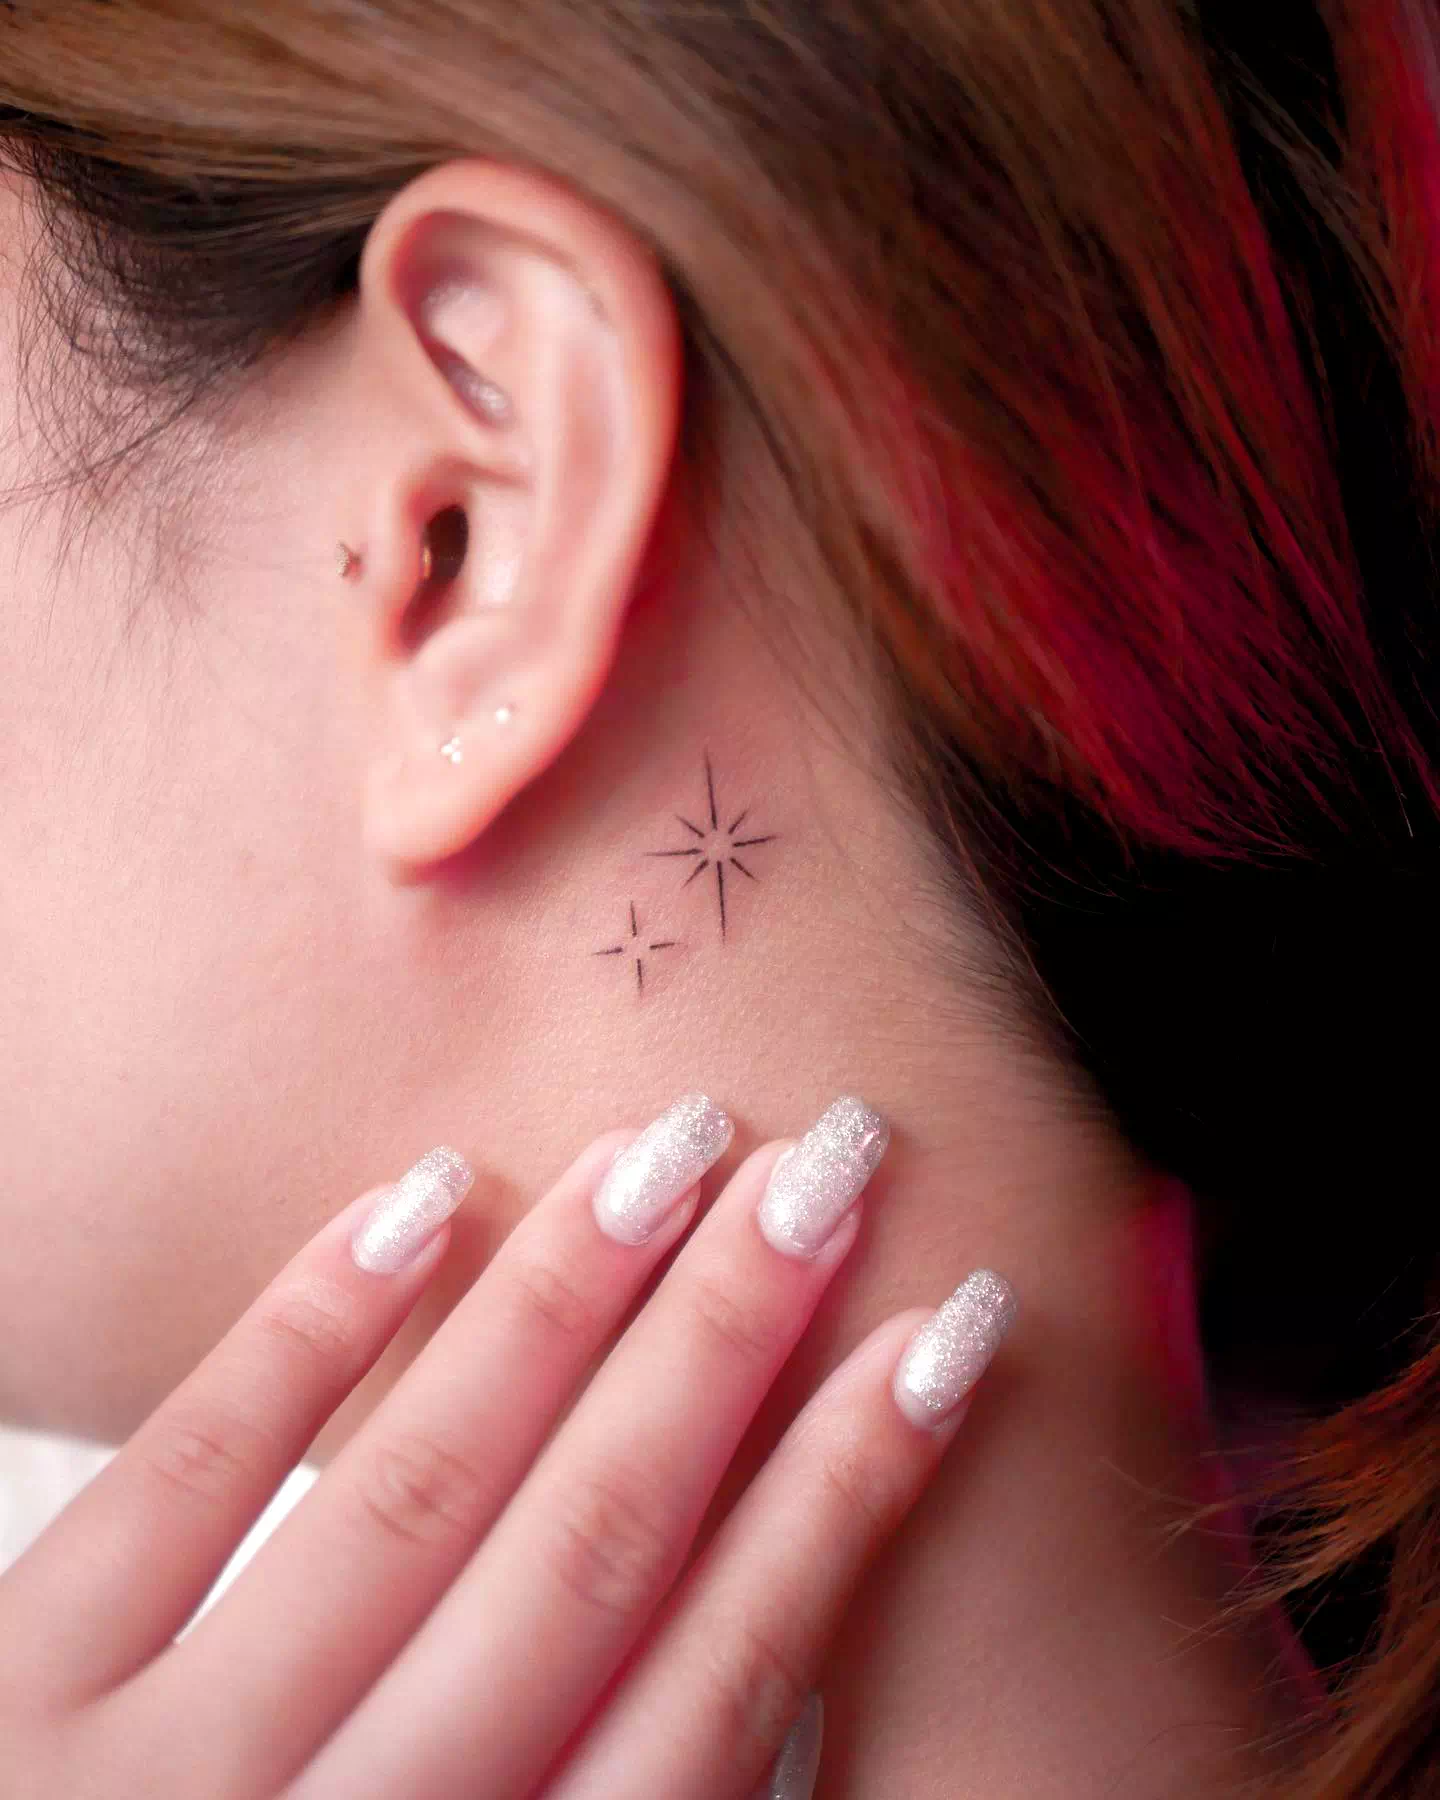 Tatuaje de estrella en el cuello 4